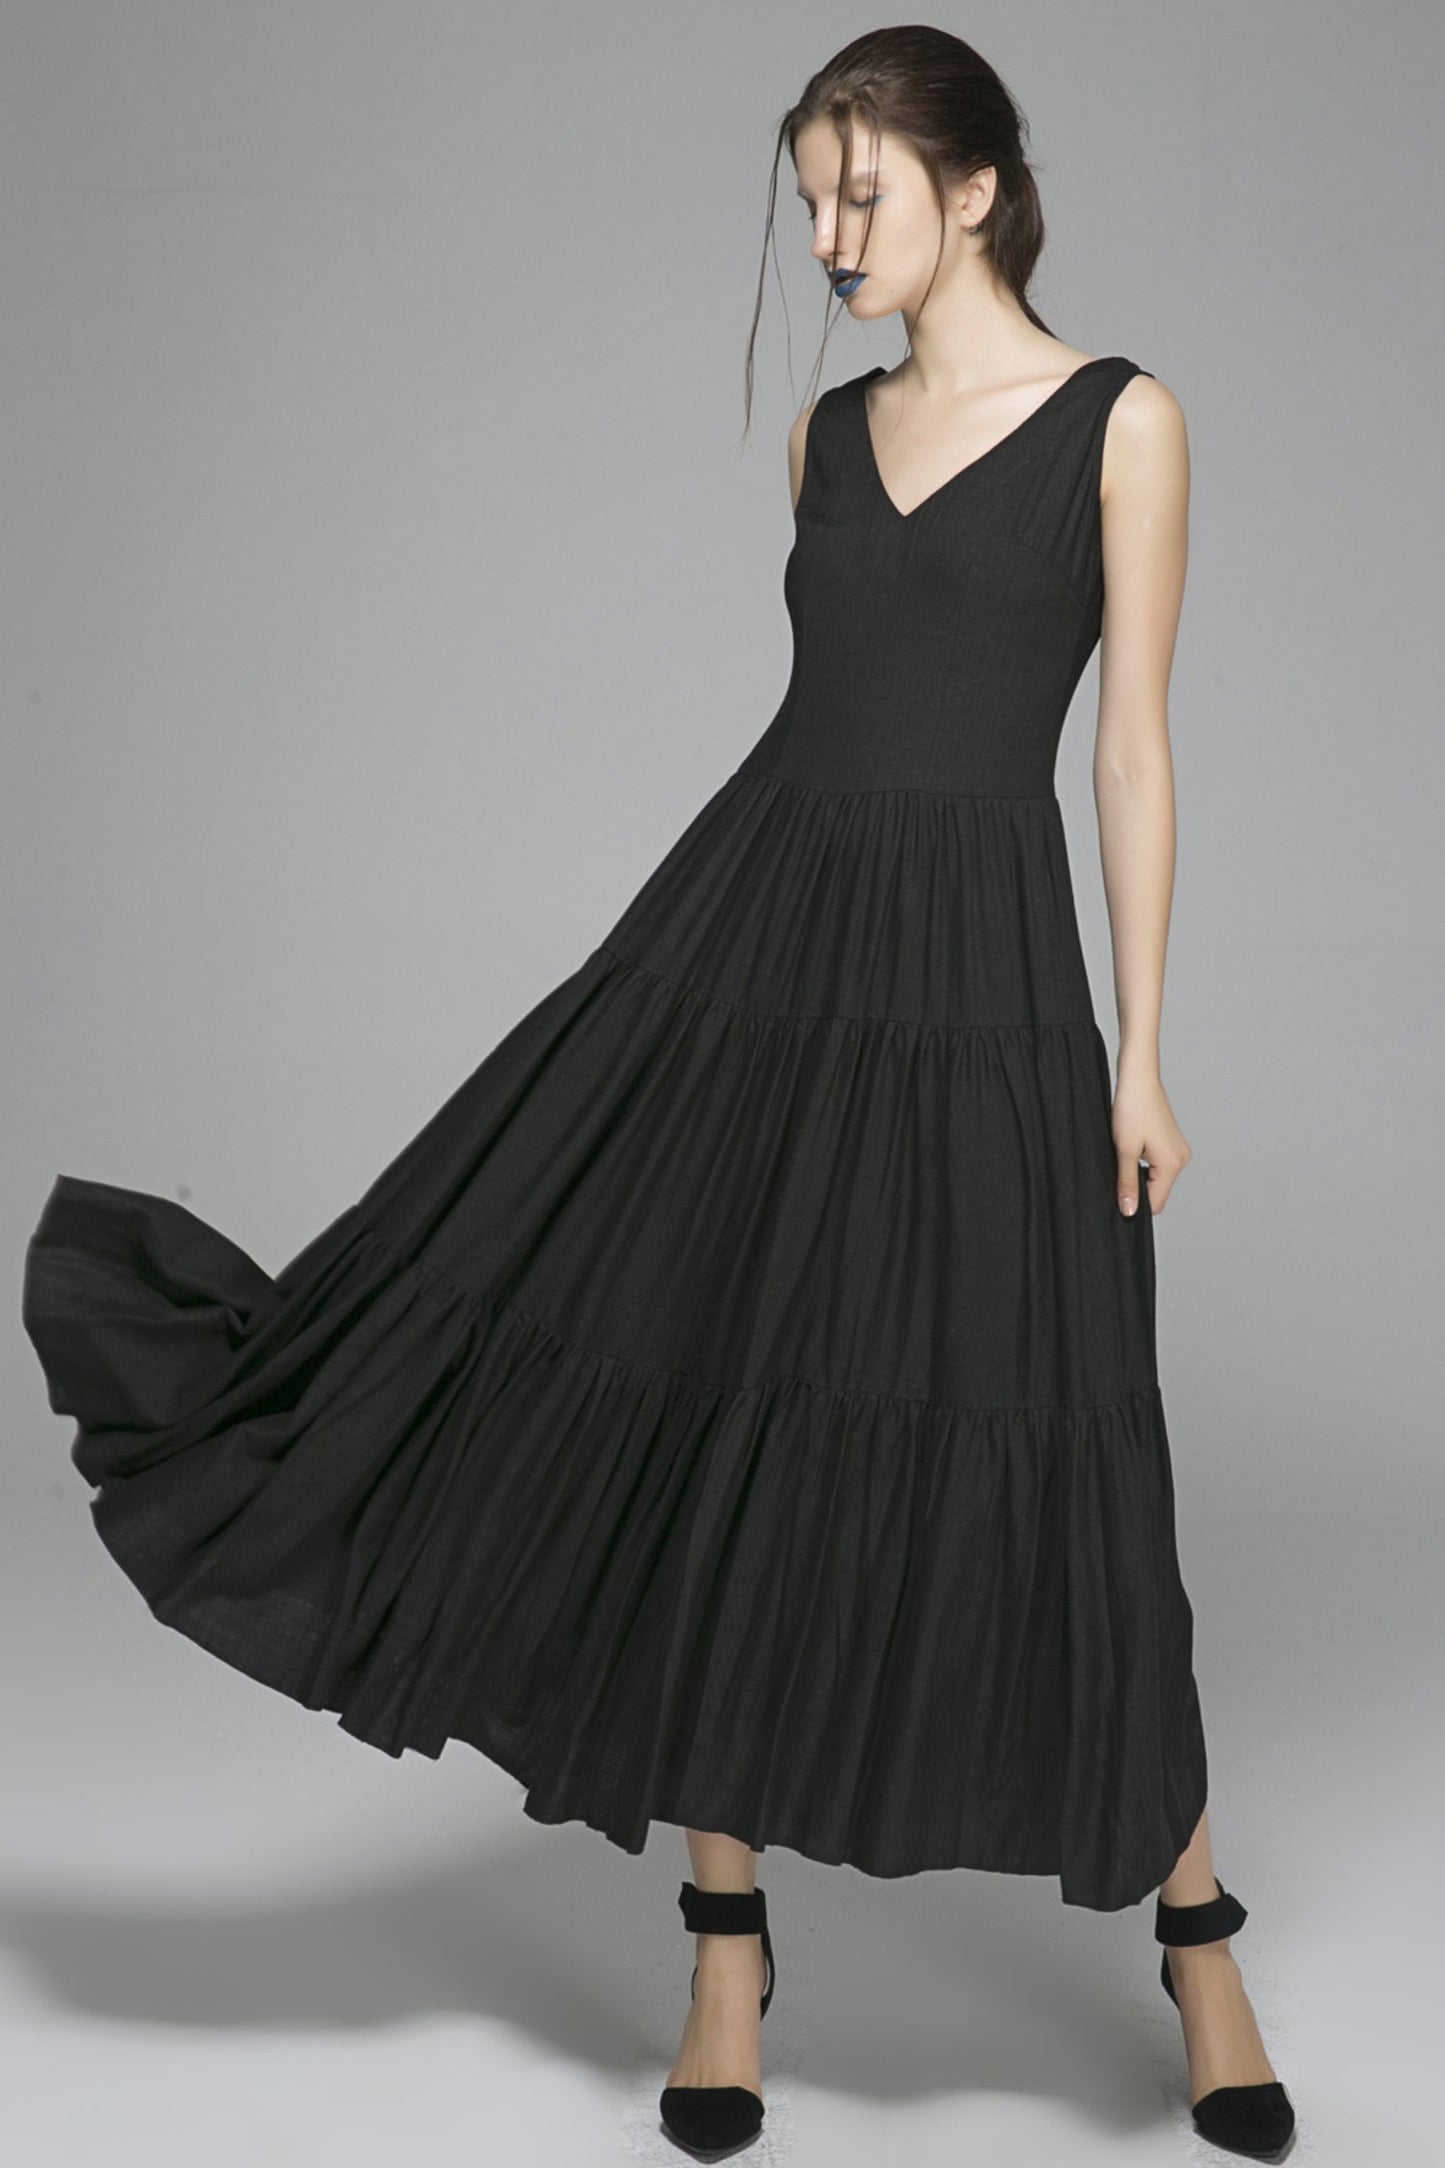 Black linen dress prom dress wedding dress women dress 1404